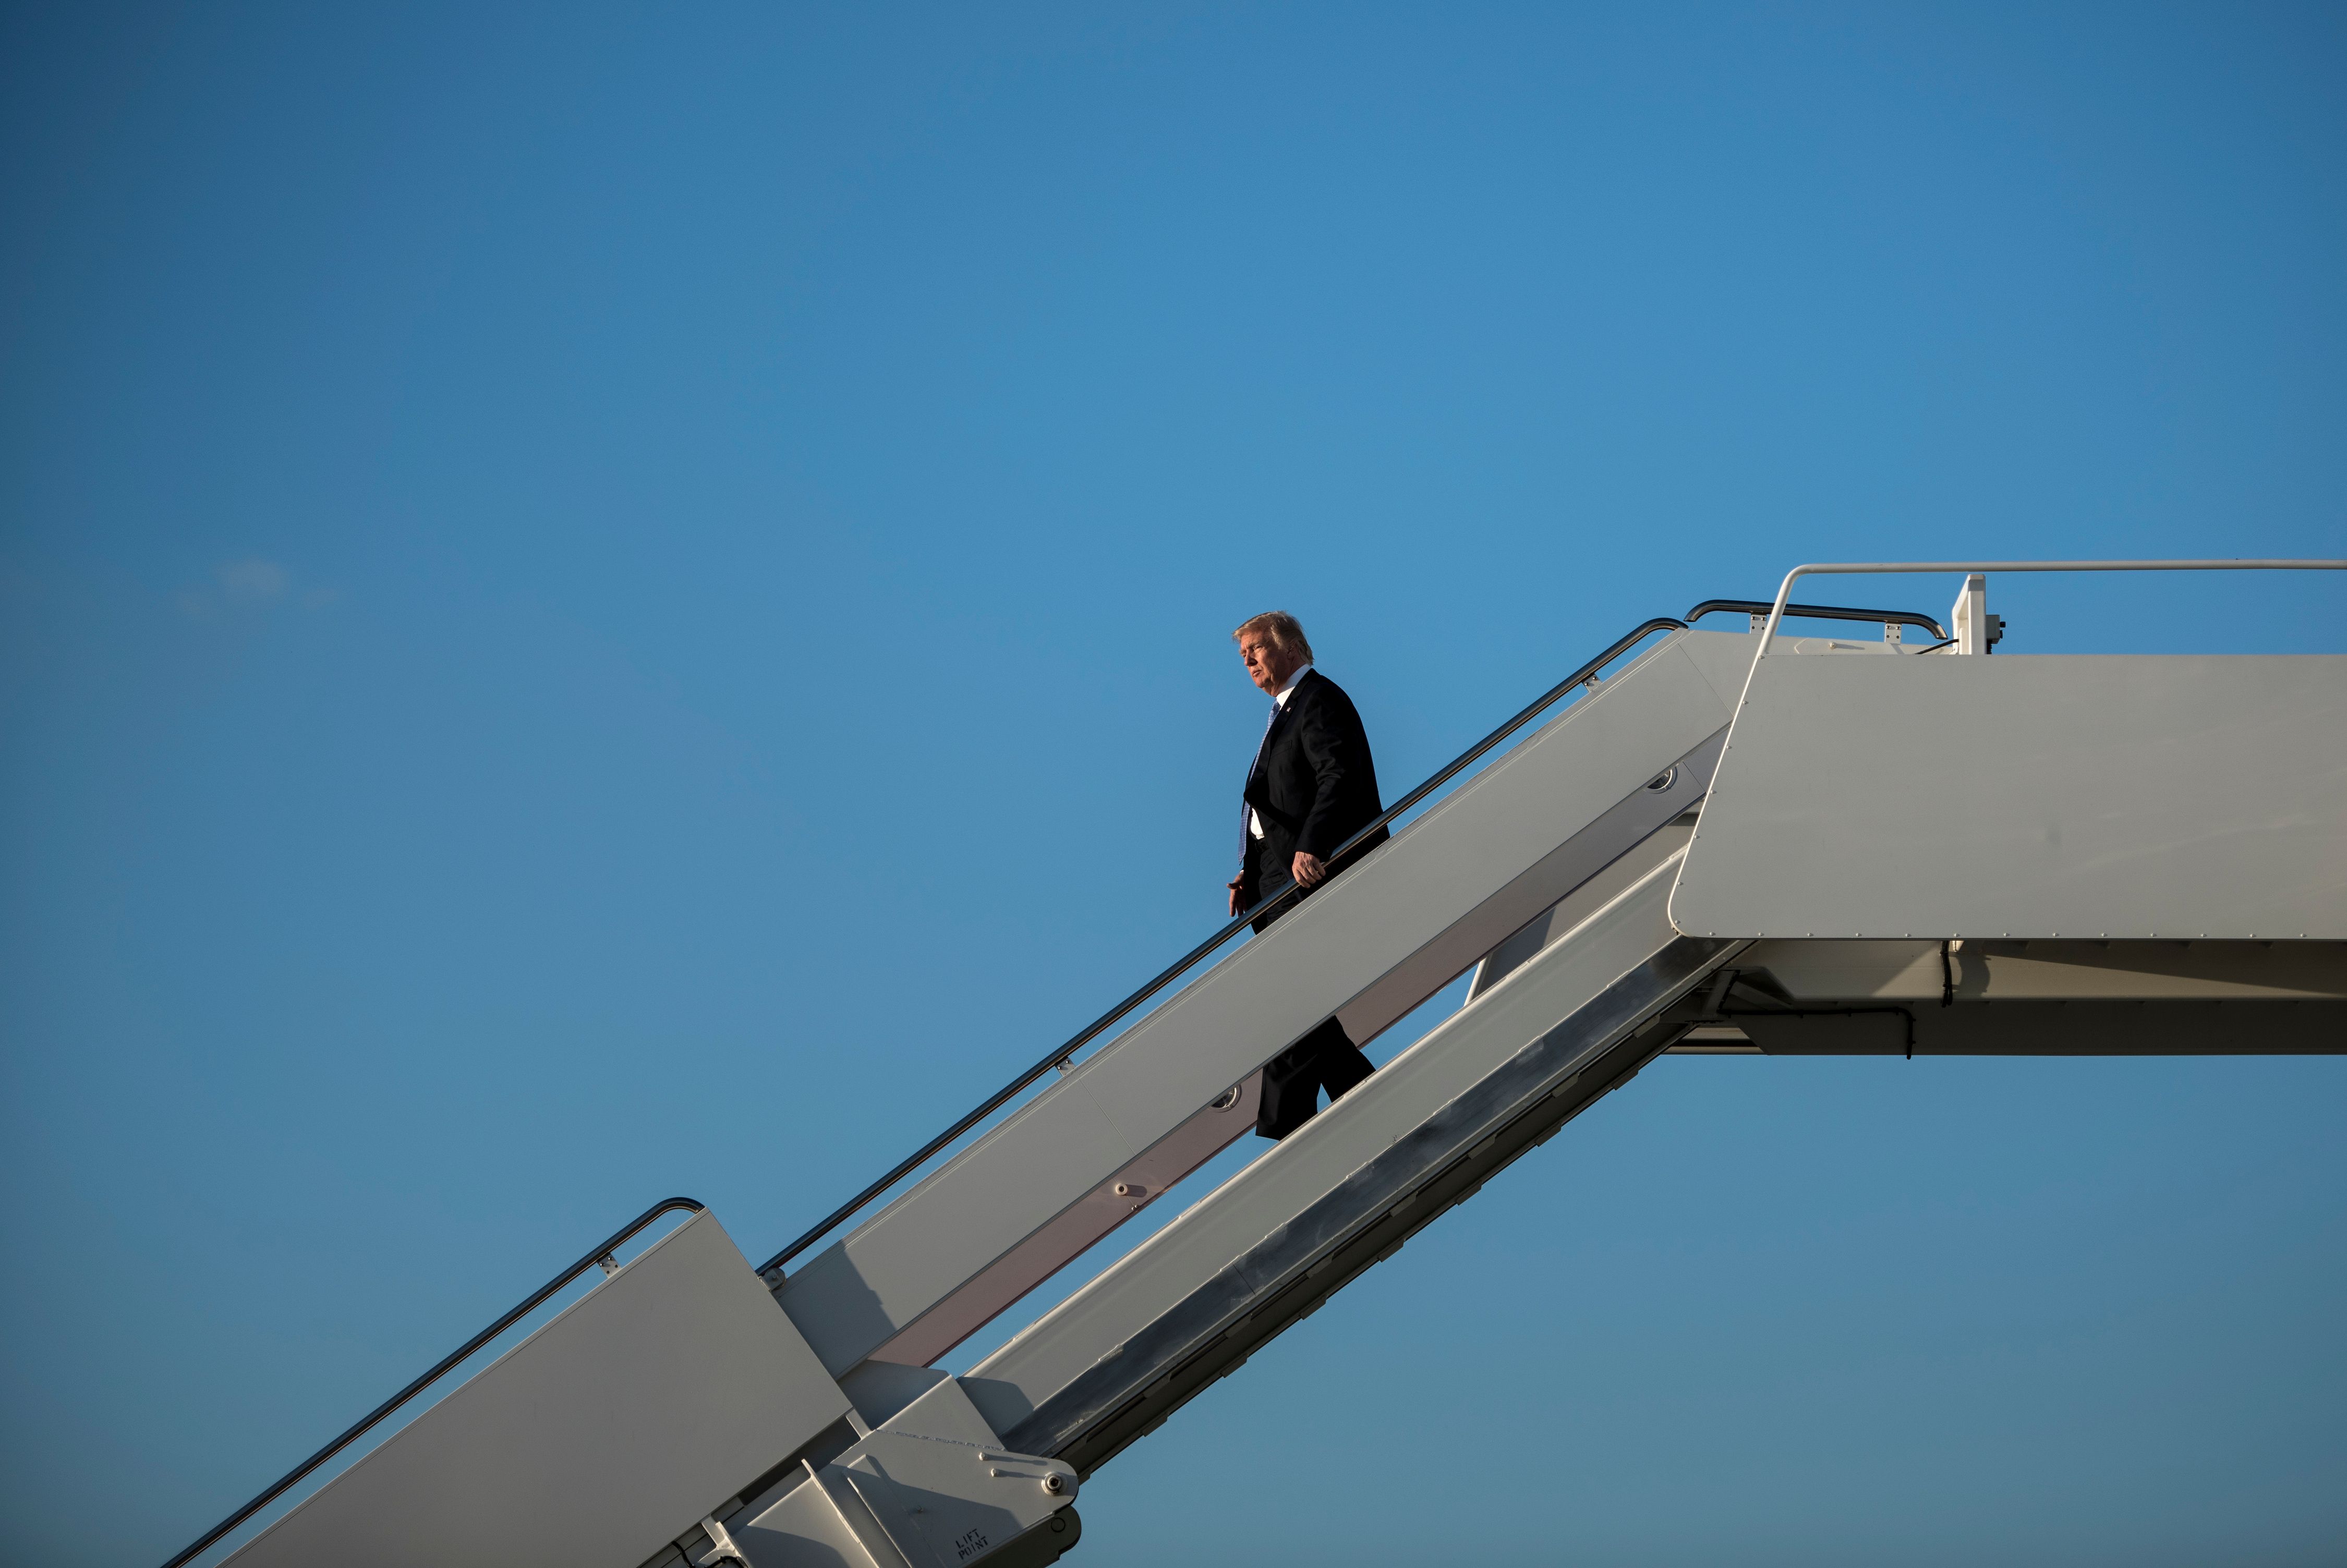 ترامب ينزل على سلم الطائرة فور وصوله واشنطن